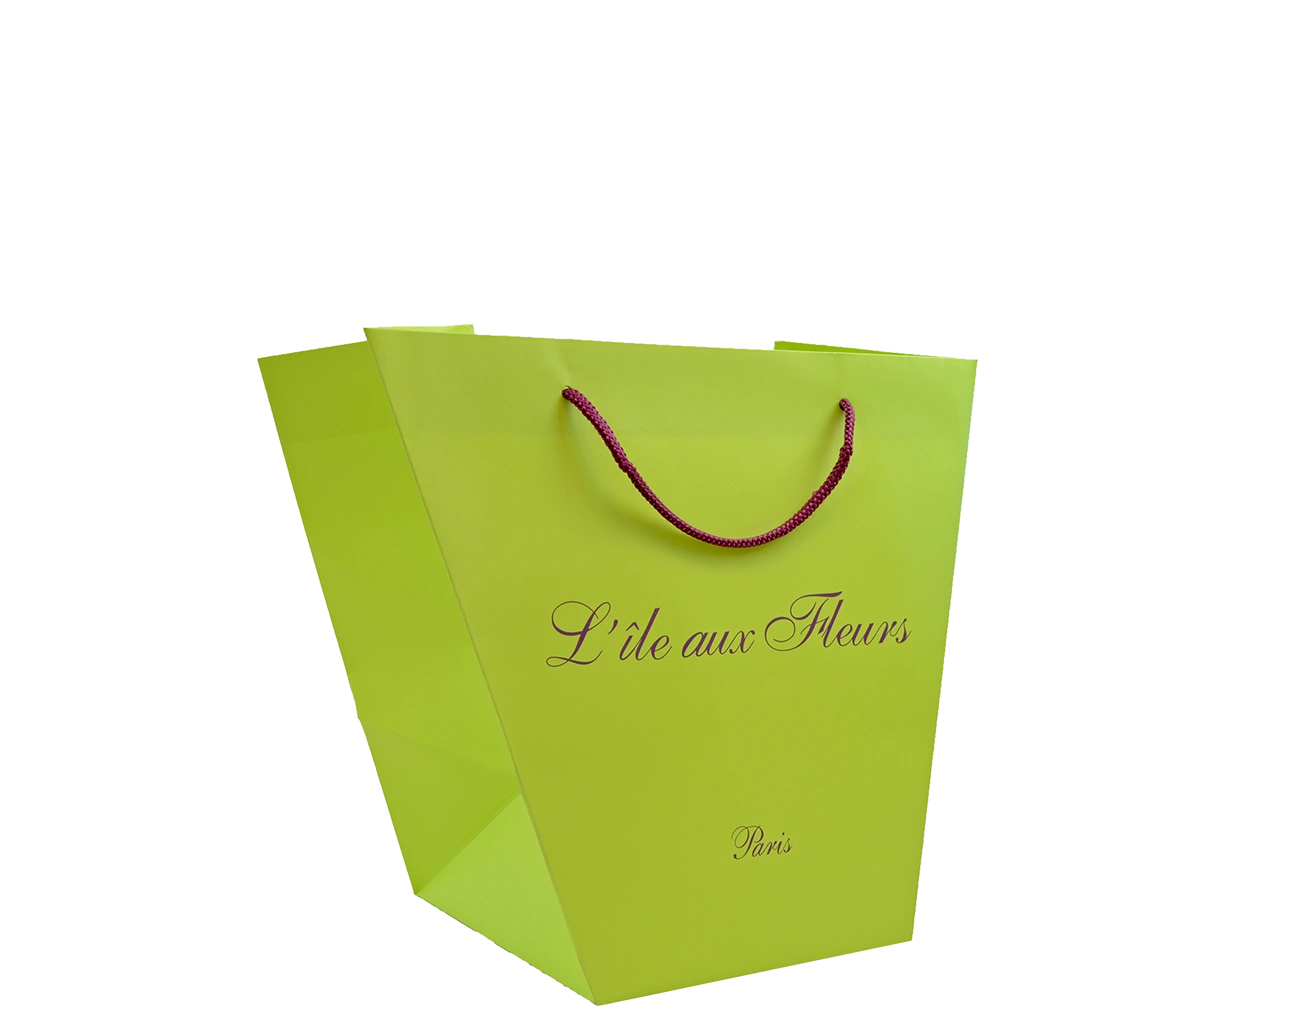 Création par Packaging Paris de ce Sac Trapèze Personnalisé, idéal pour présenter un joli Bouquet. L'emballage est pelliculé Mat & dispose de Poignées courtes.